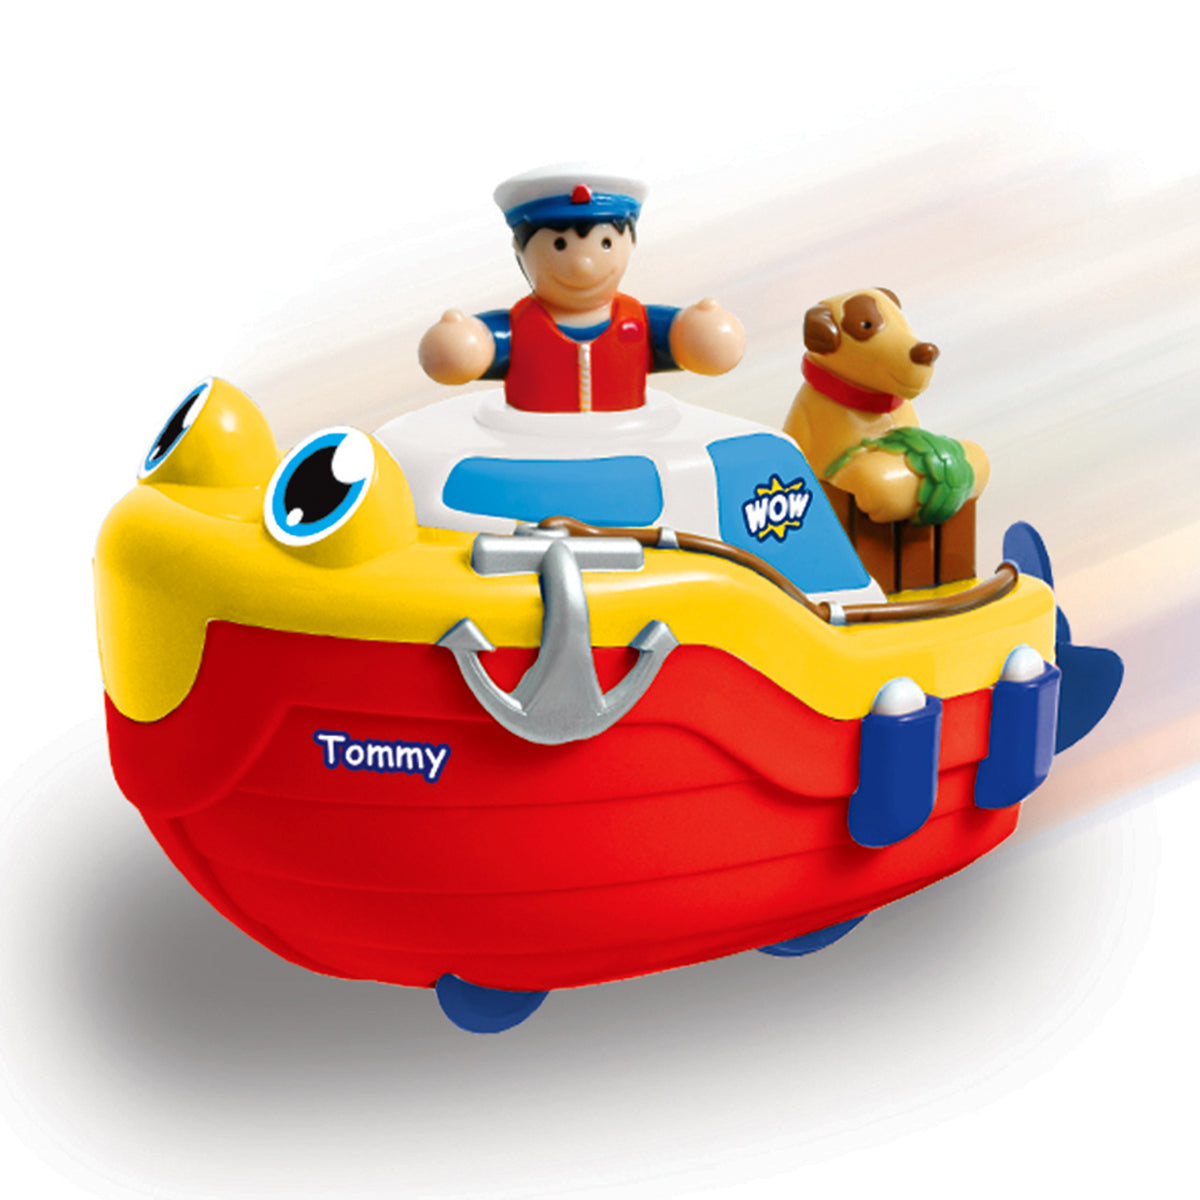 WOW Toys Tommy Tug Boat (Bath Toy)